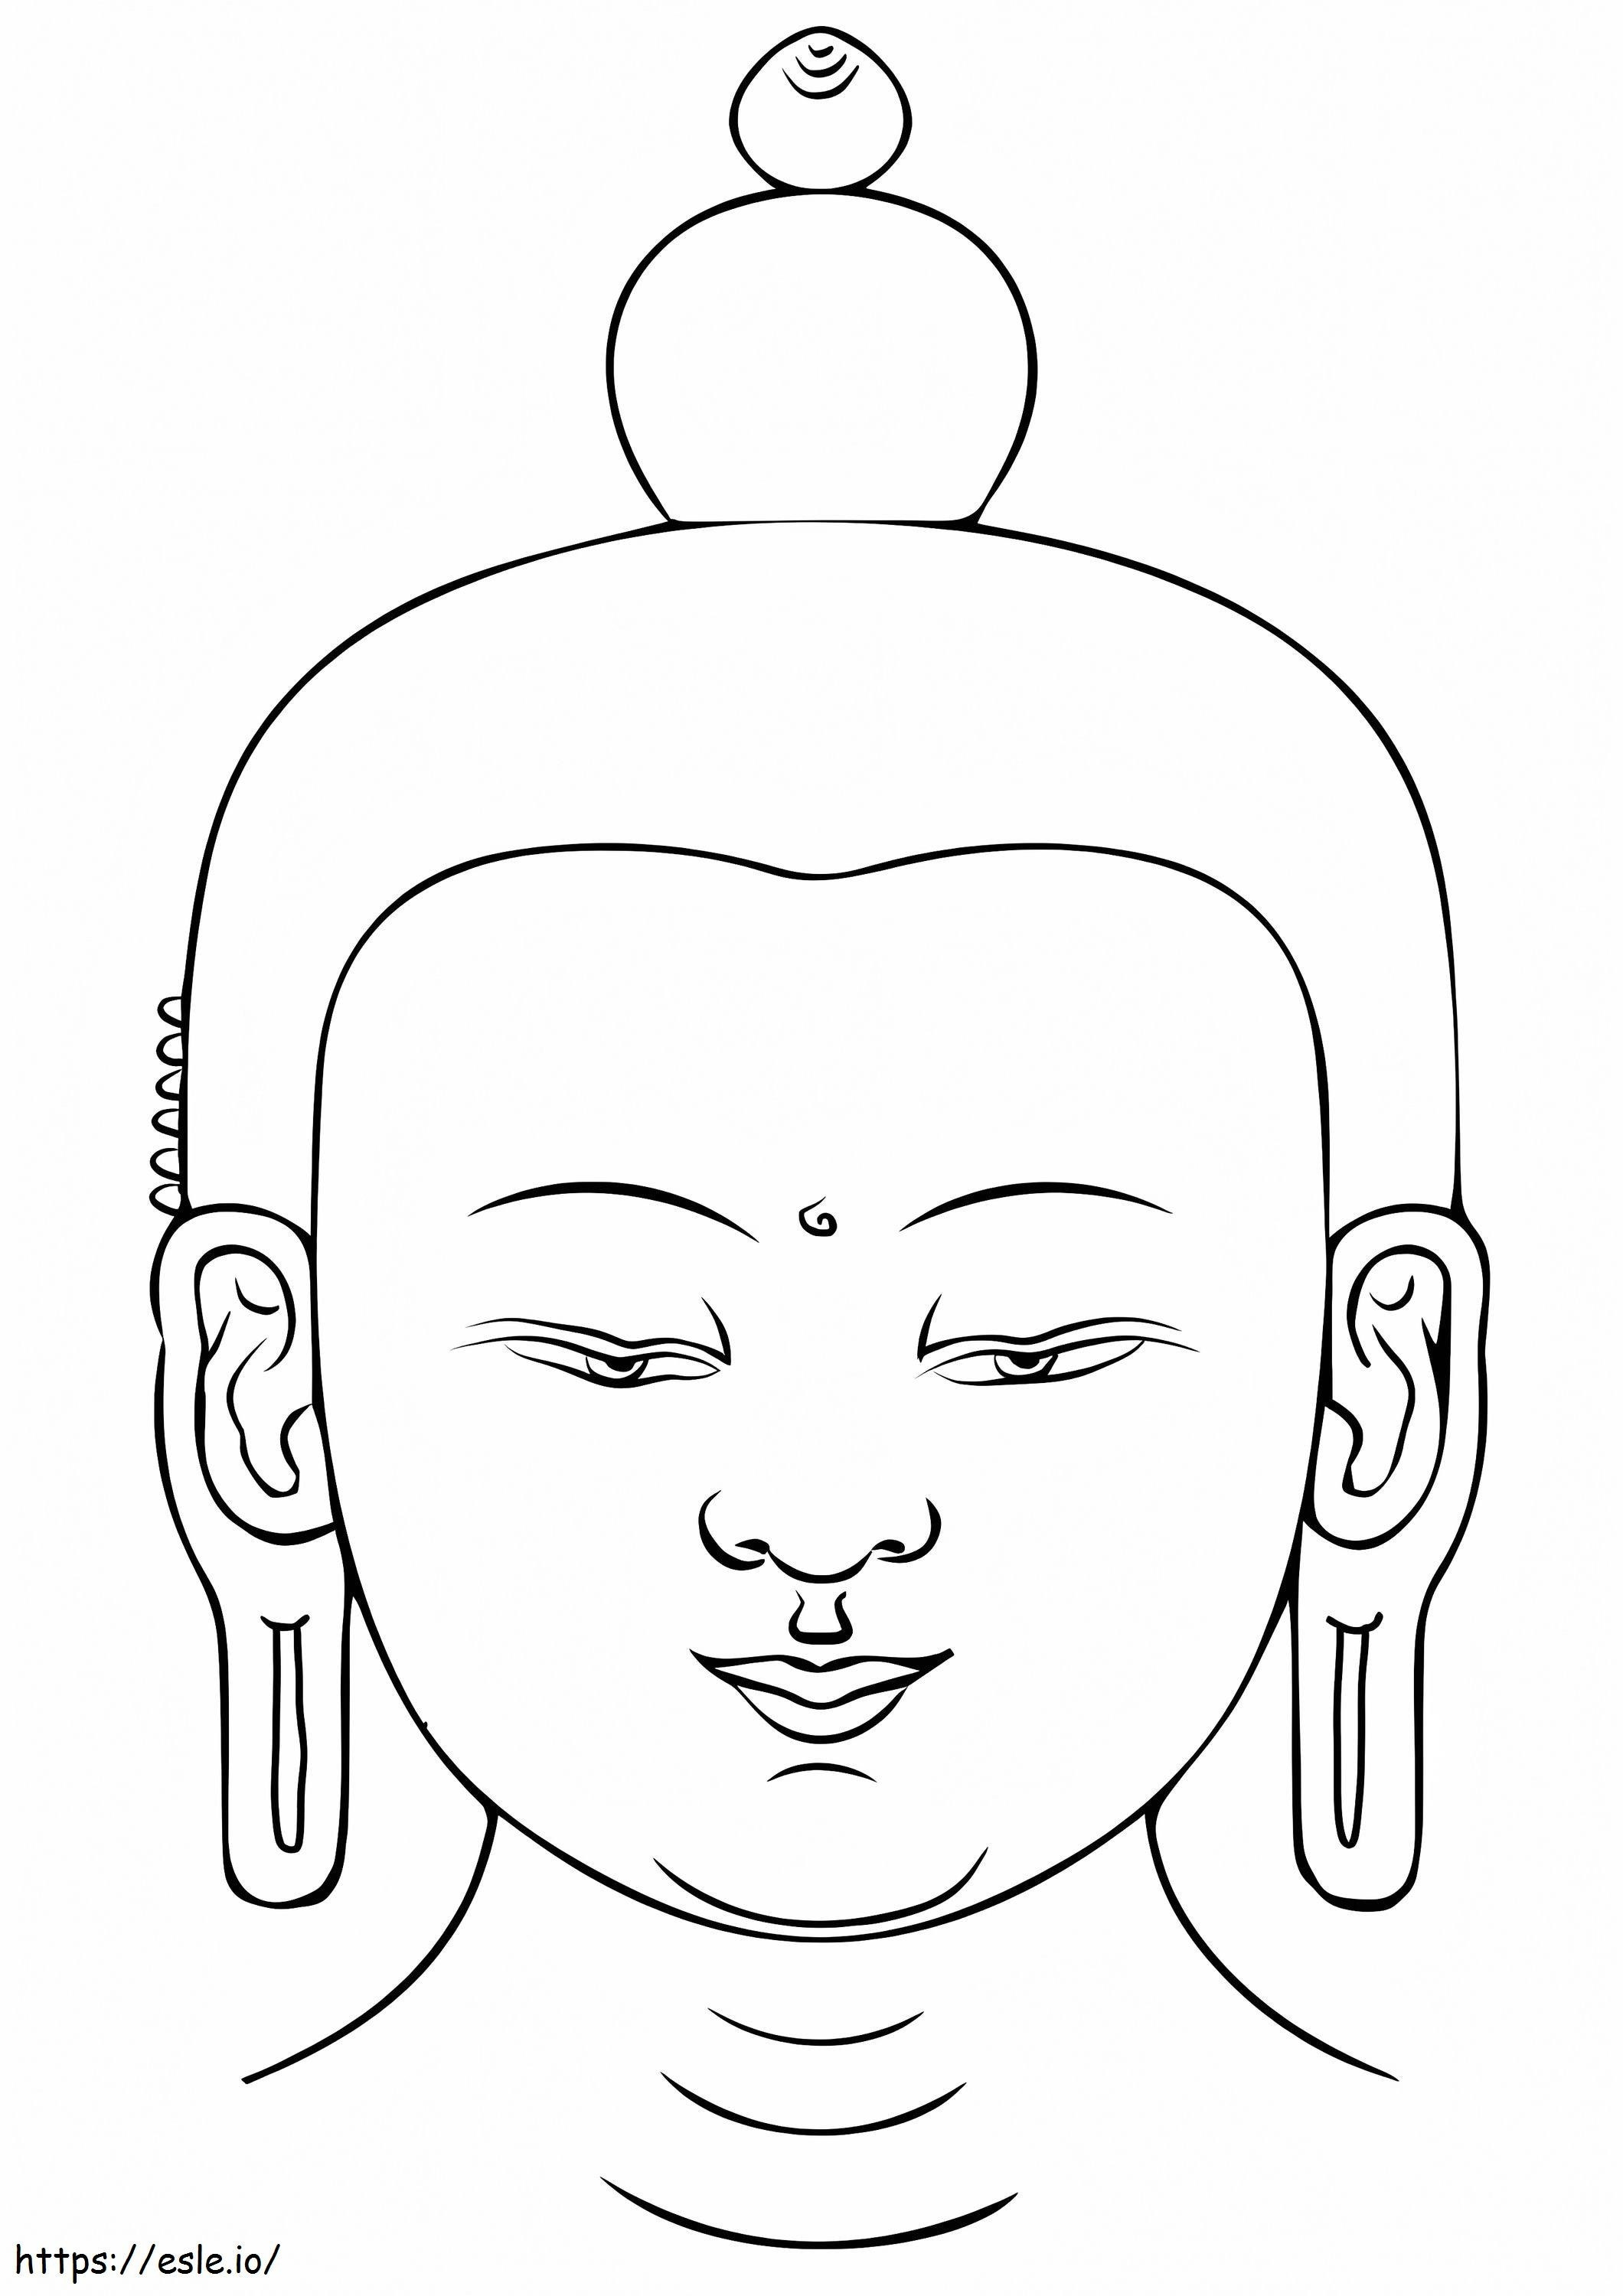 Buda'nın Başı boyama